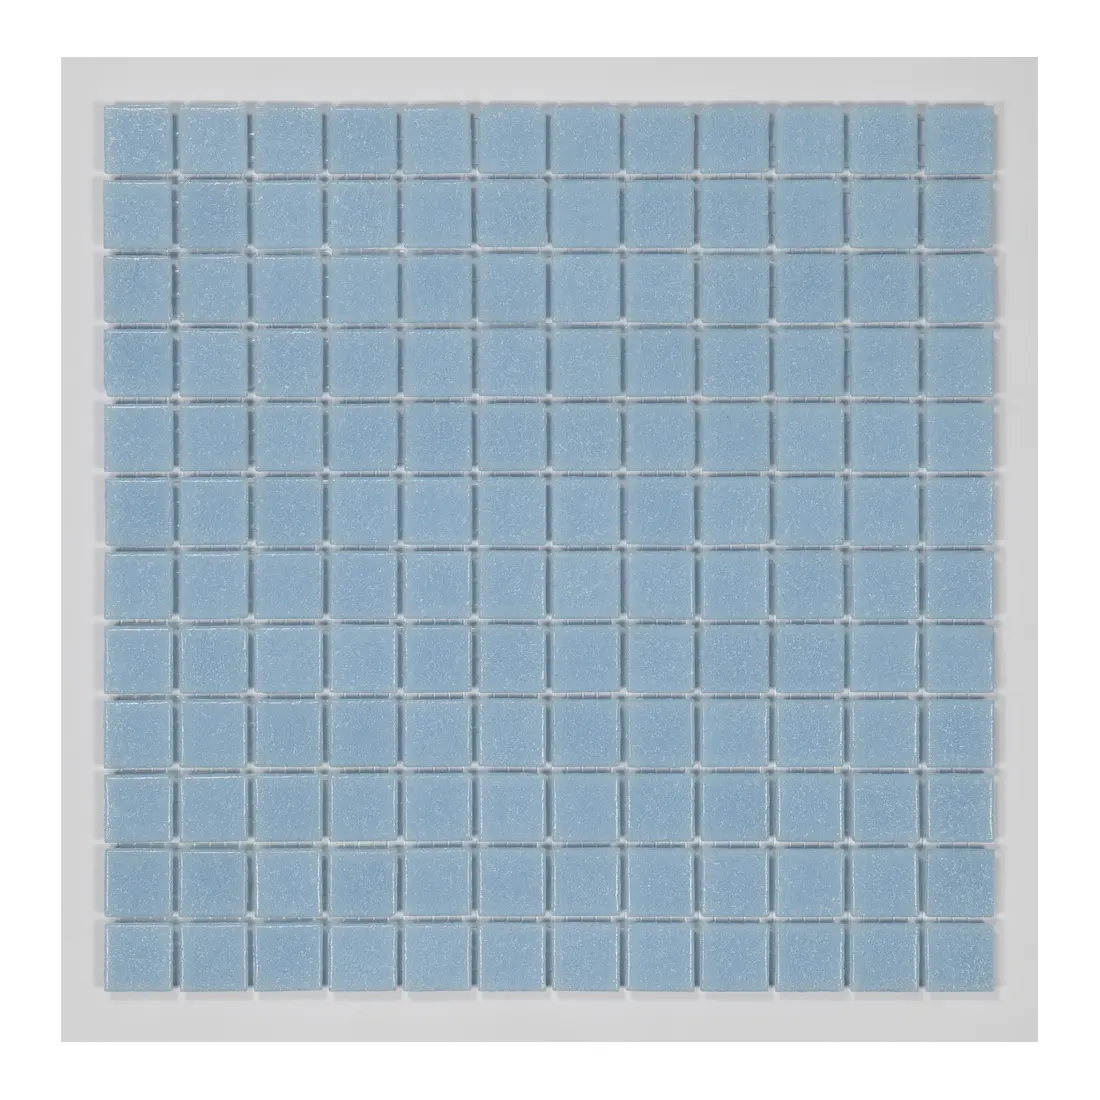 Azulejo de mosaico para piscina de cristal quadrado de qualidade, mosaico decorativo para banheiro, mosaico de vidro para piscina, venda imperdível